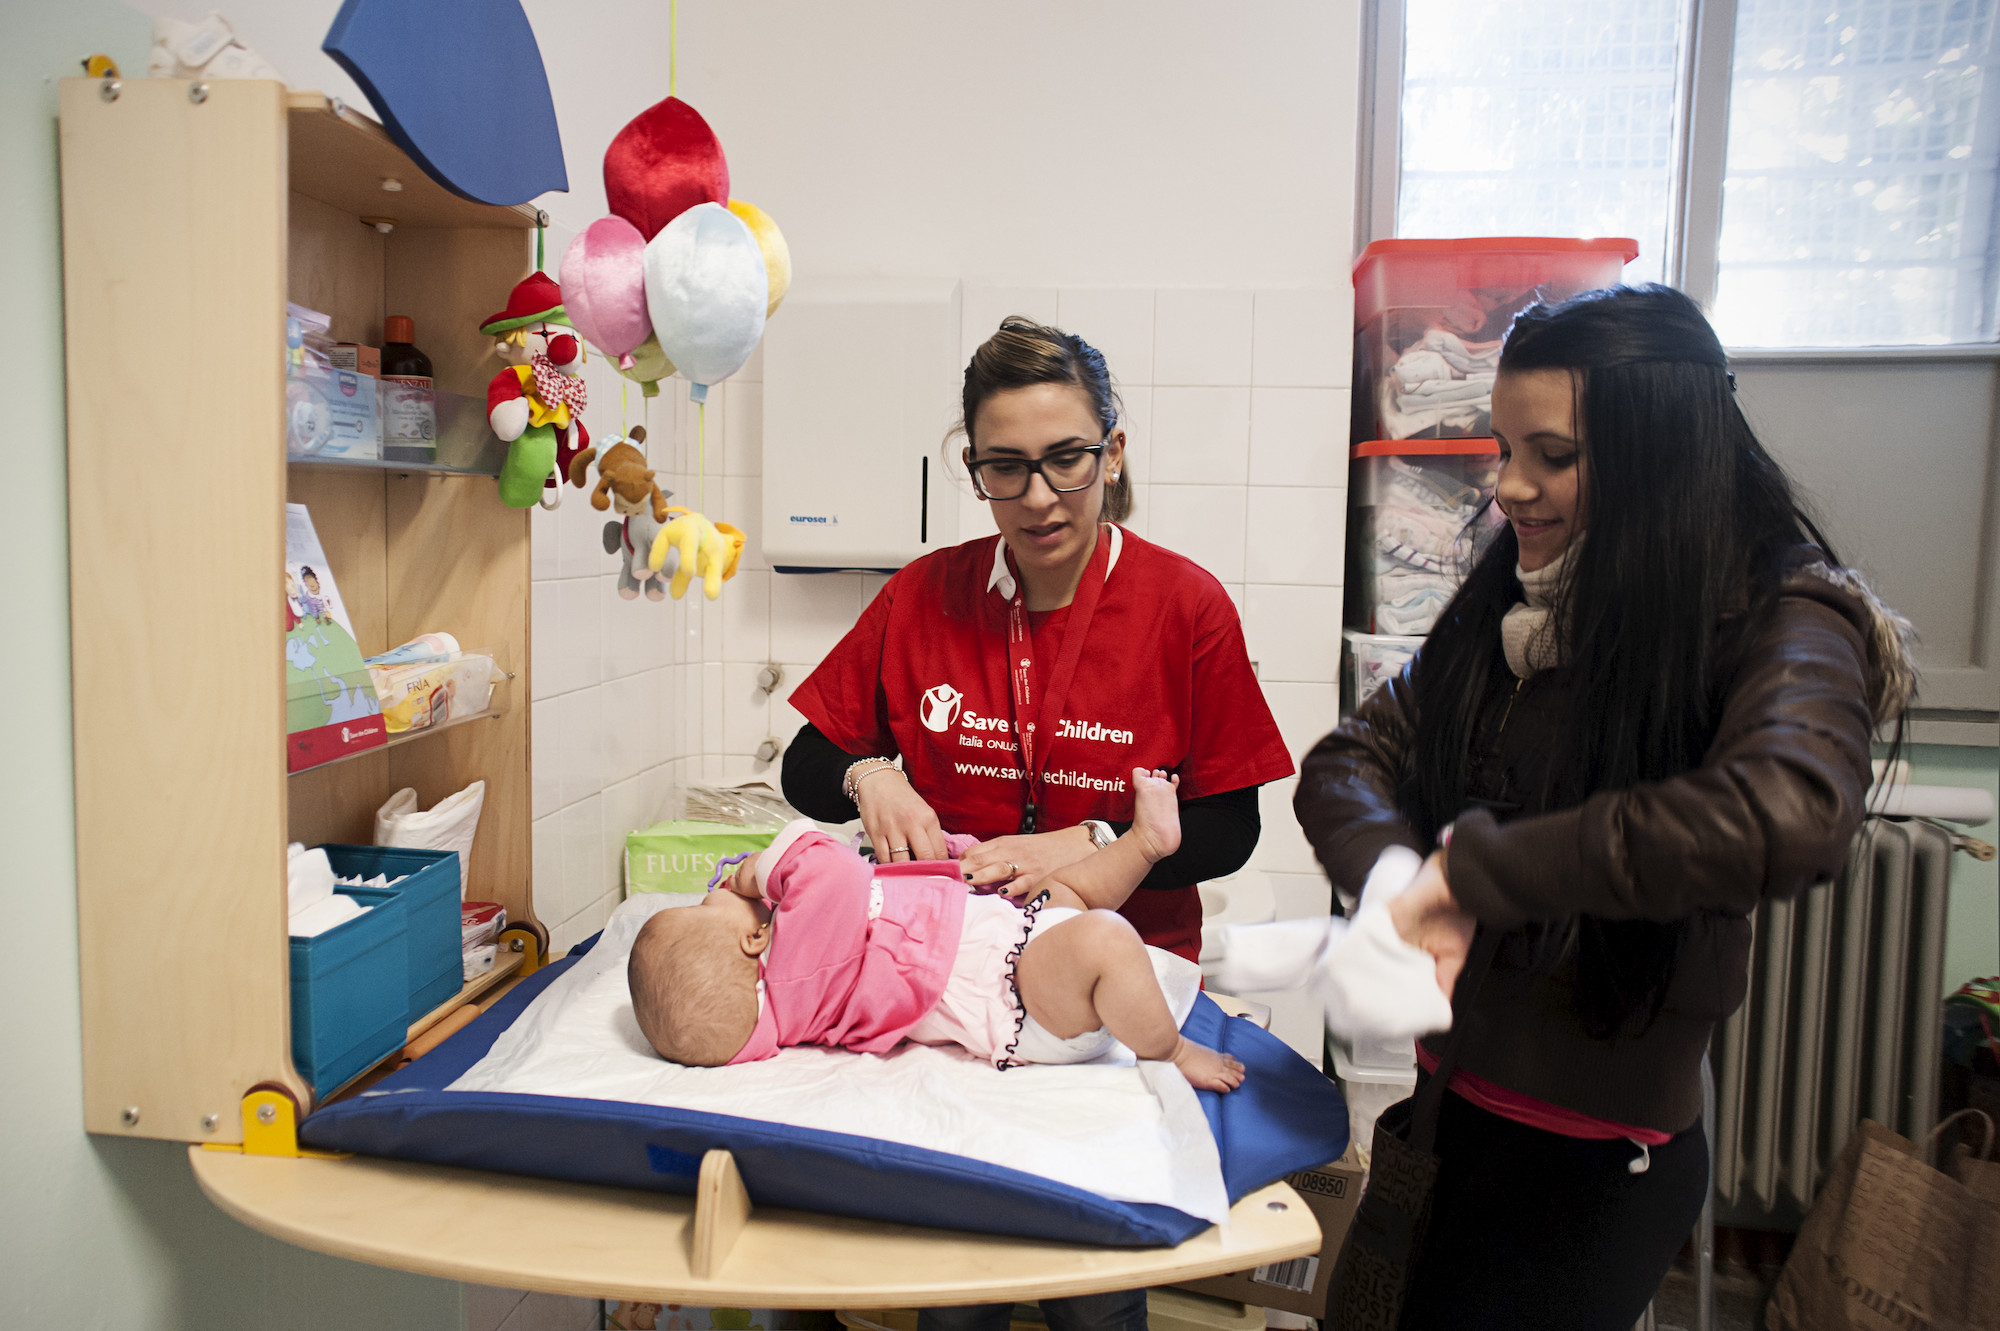 Mamme e bambini supportati all'interno del progetto Fiocchi in Ospedale di Save the Children, avviato all'interno dell'Ospedale Niguarda Ca' Granda di Milano.